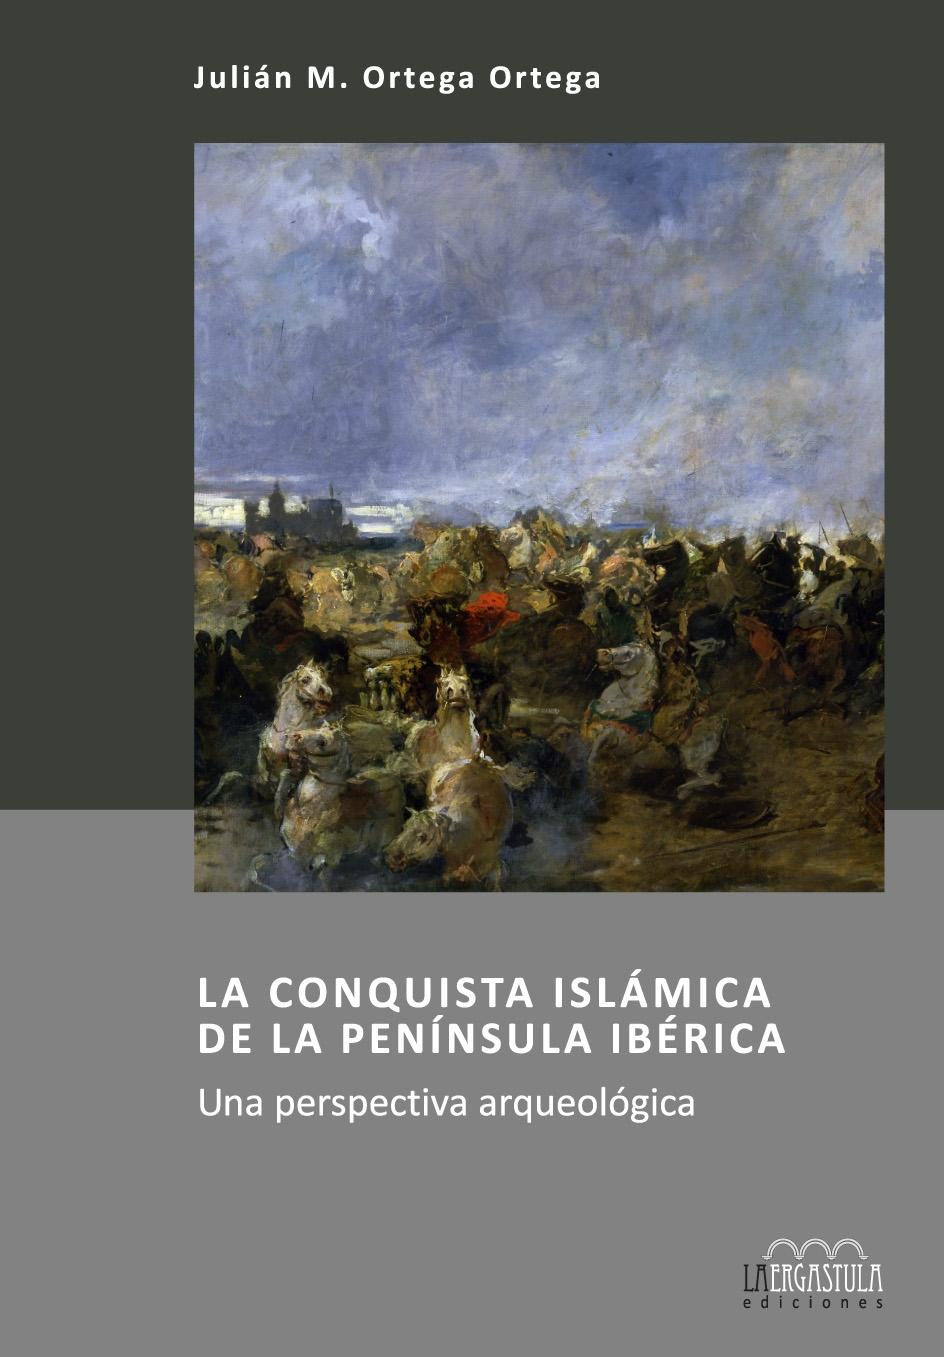 LA CONQUISTA ISLÁMICA DE LA PENÍNSULA IBÉRICA "Una perspectiva arqueológica"